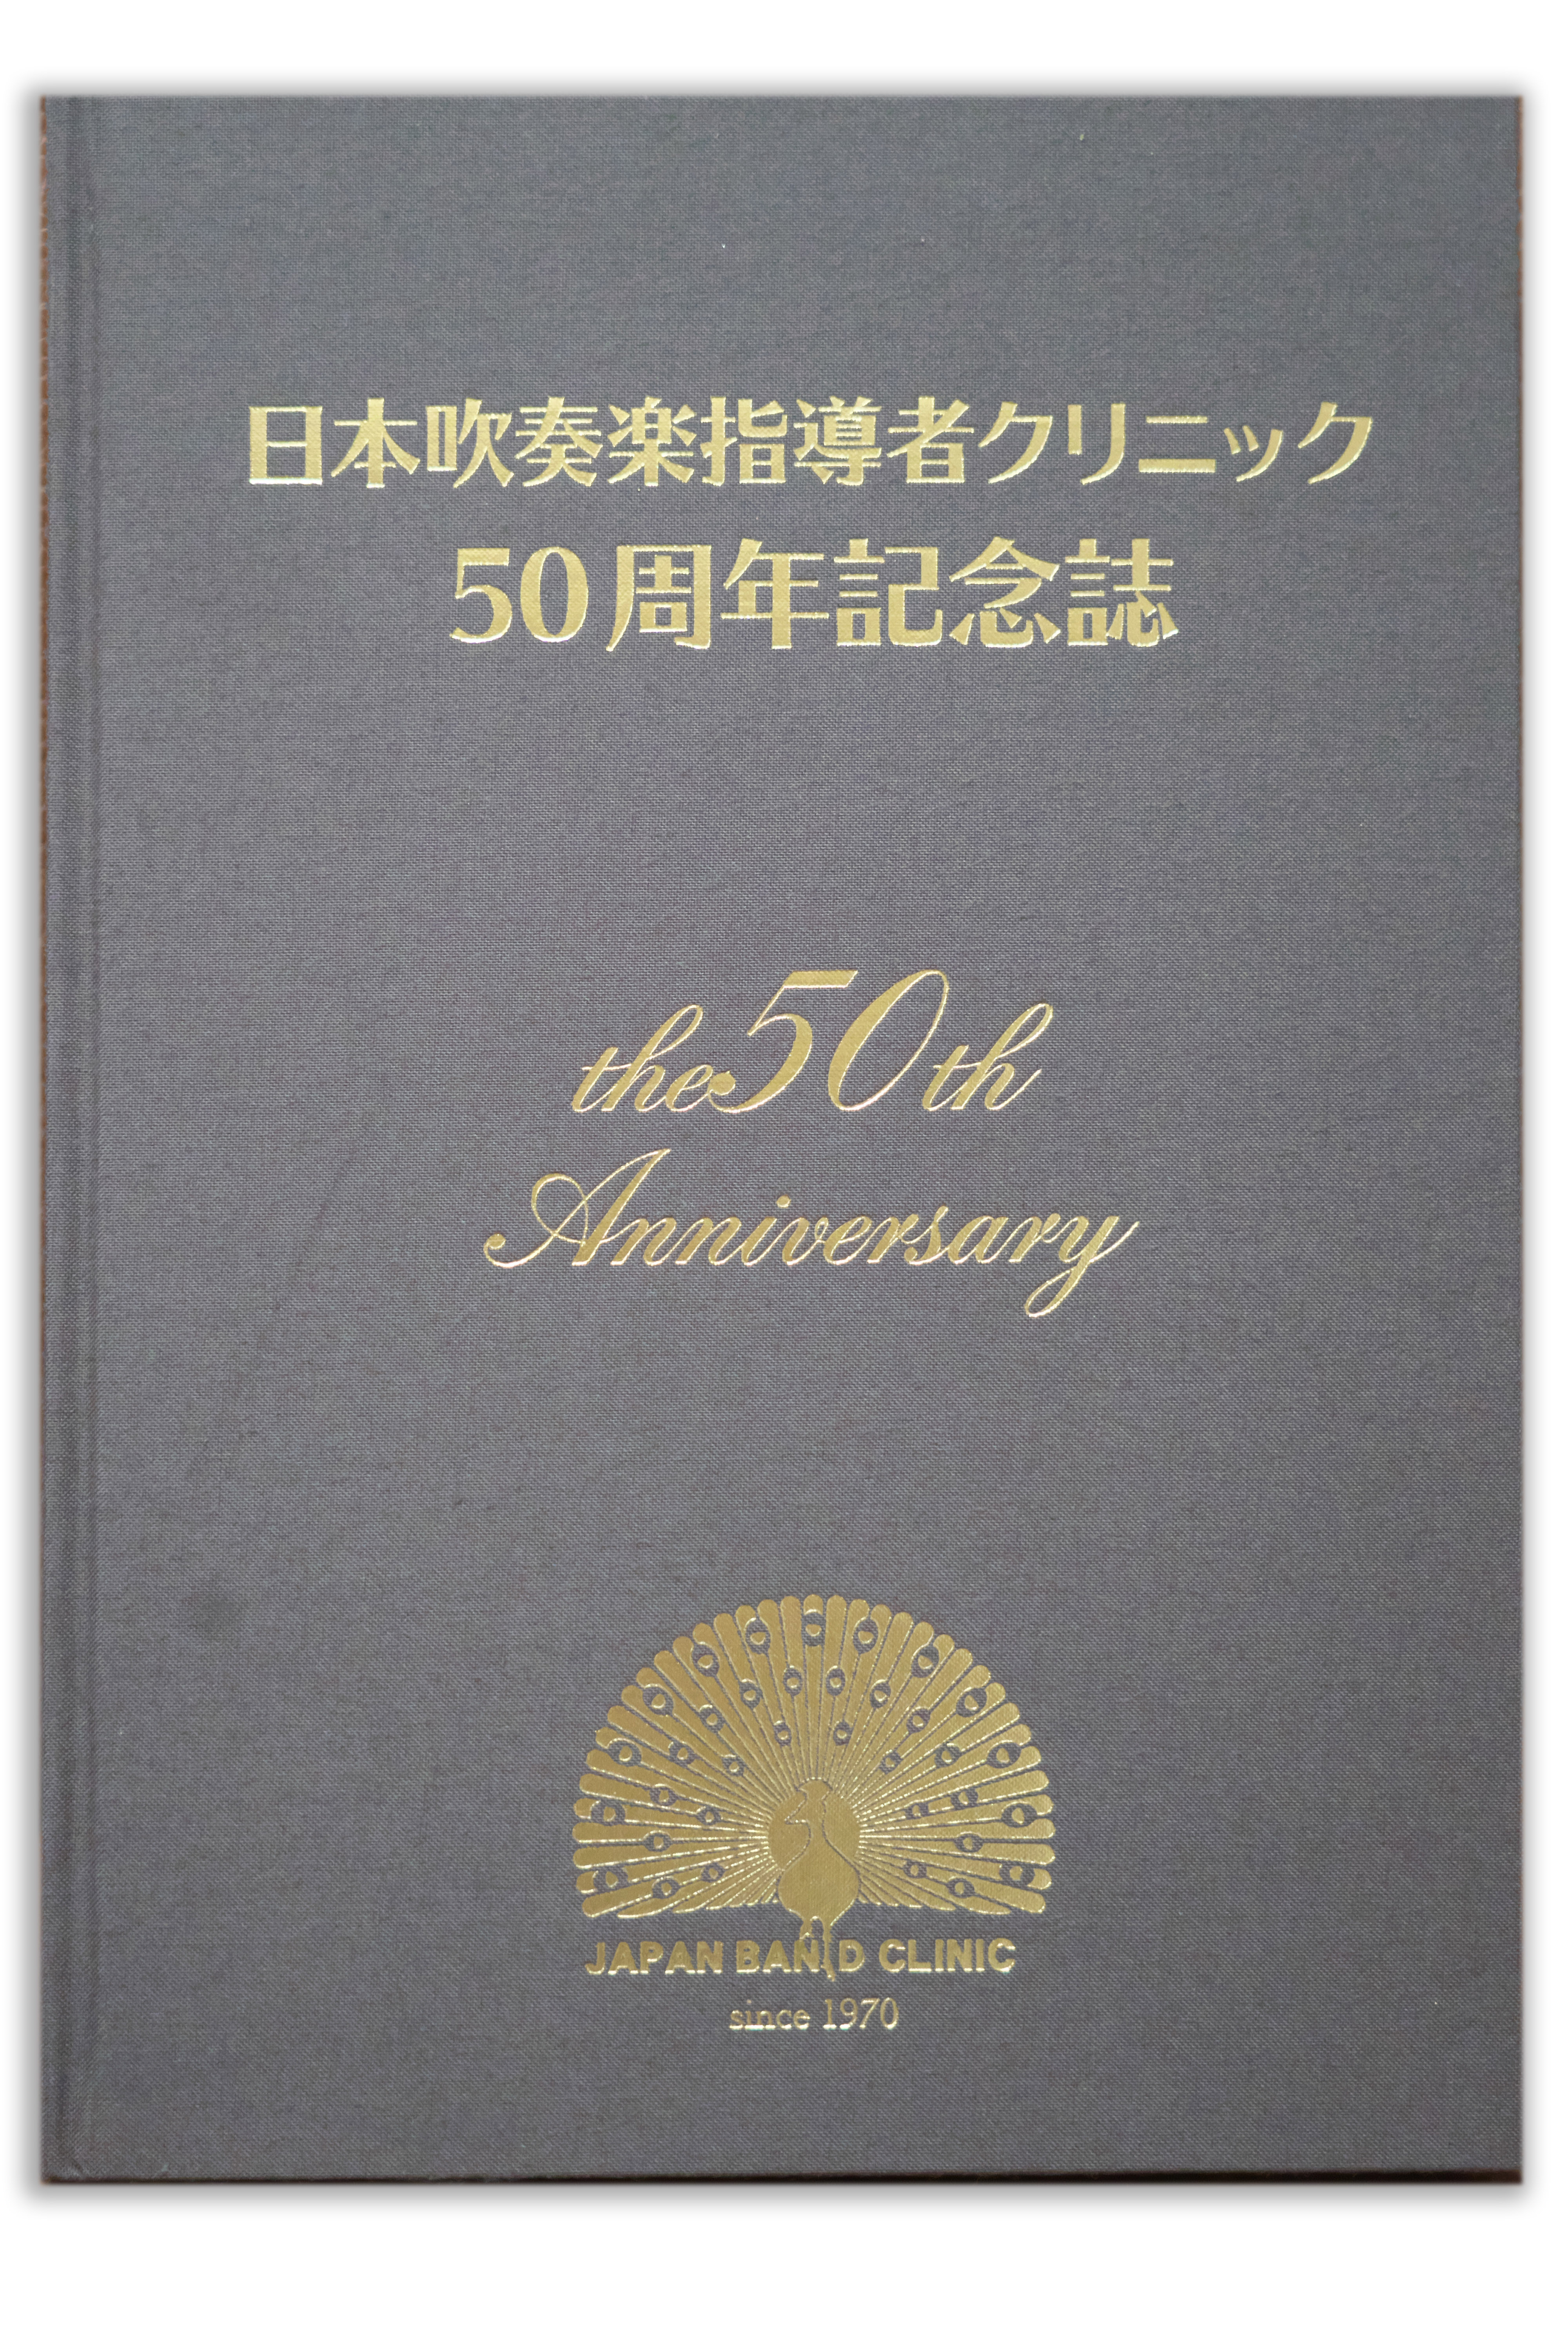 日本吹奏楽指導者クリニック50周年記念誌